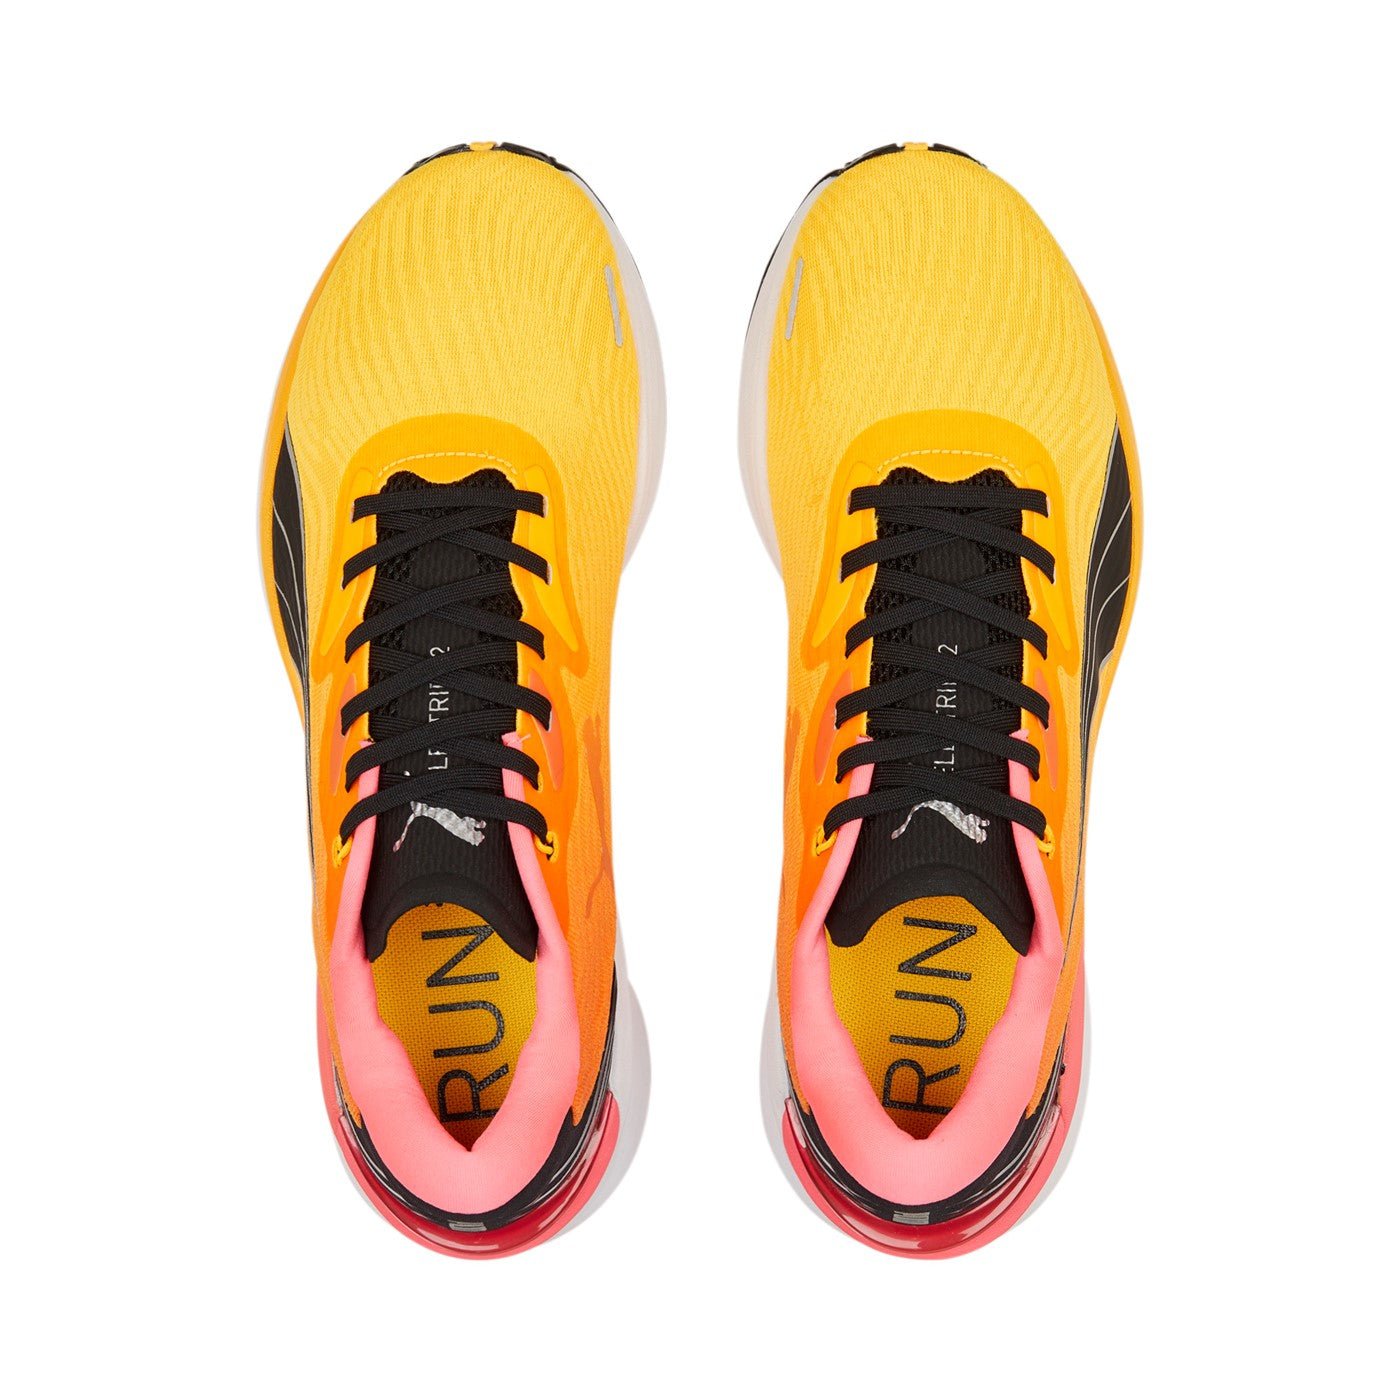 Puma men&#39;s running shoe Electrify Nitro 2 376814 03 yellow